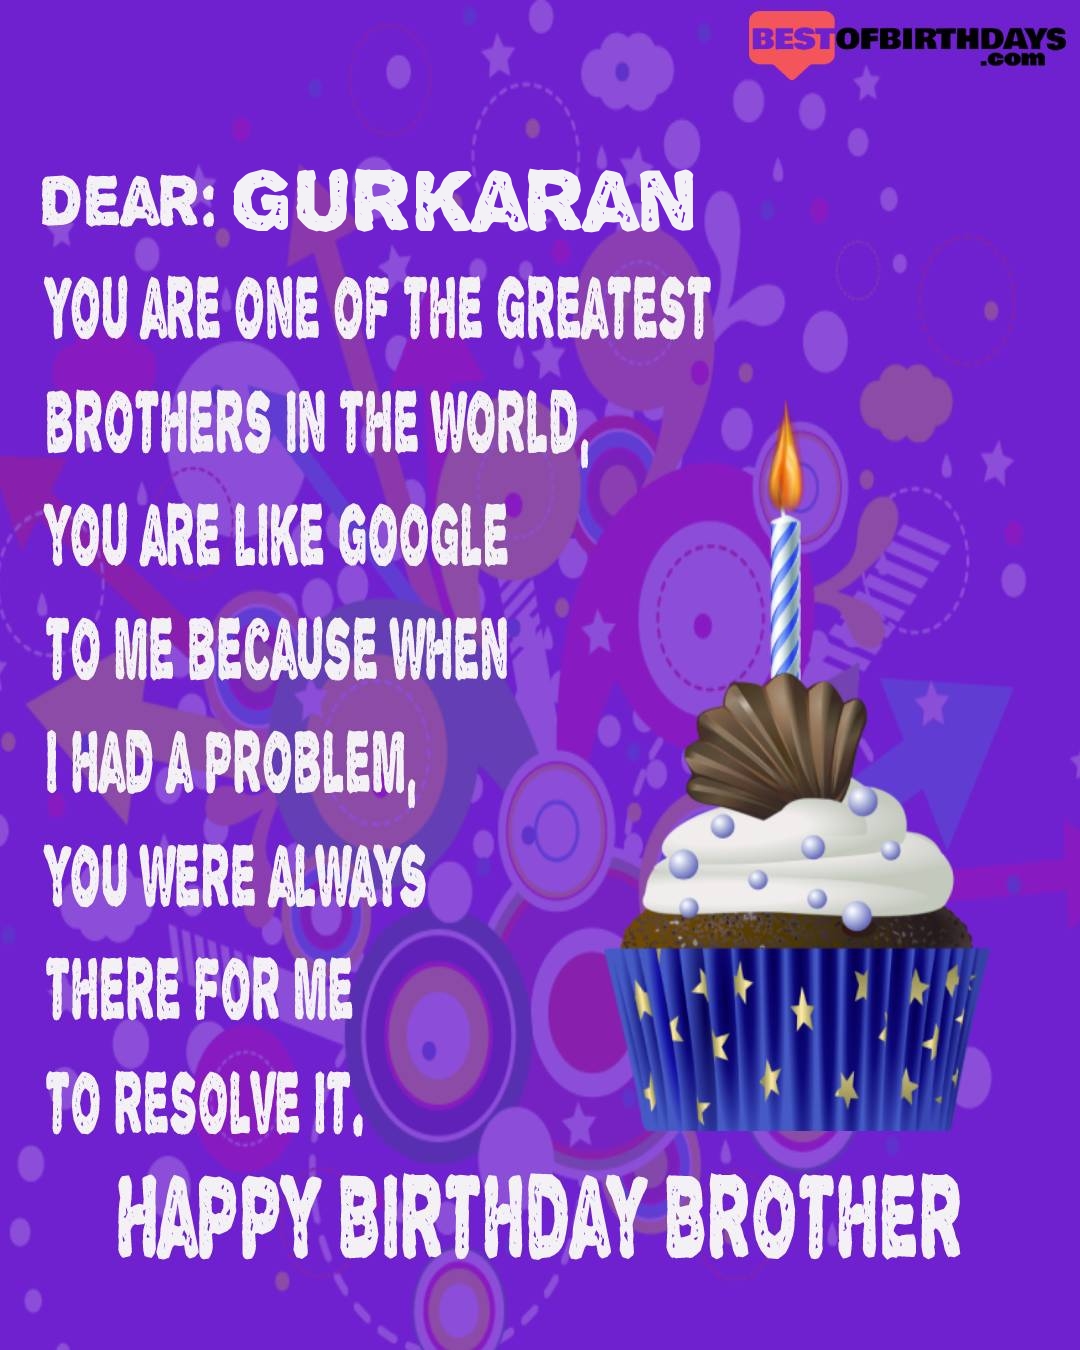 Happy birthday gurkaran bhai brother bro